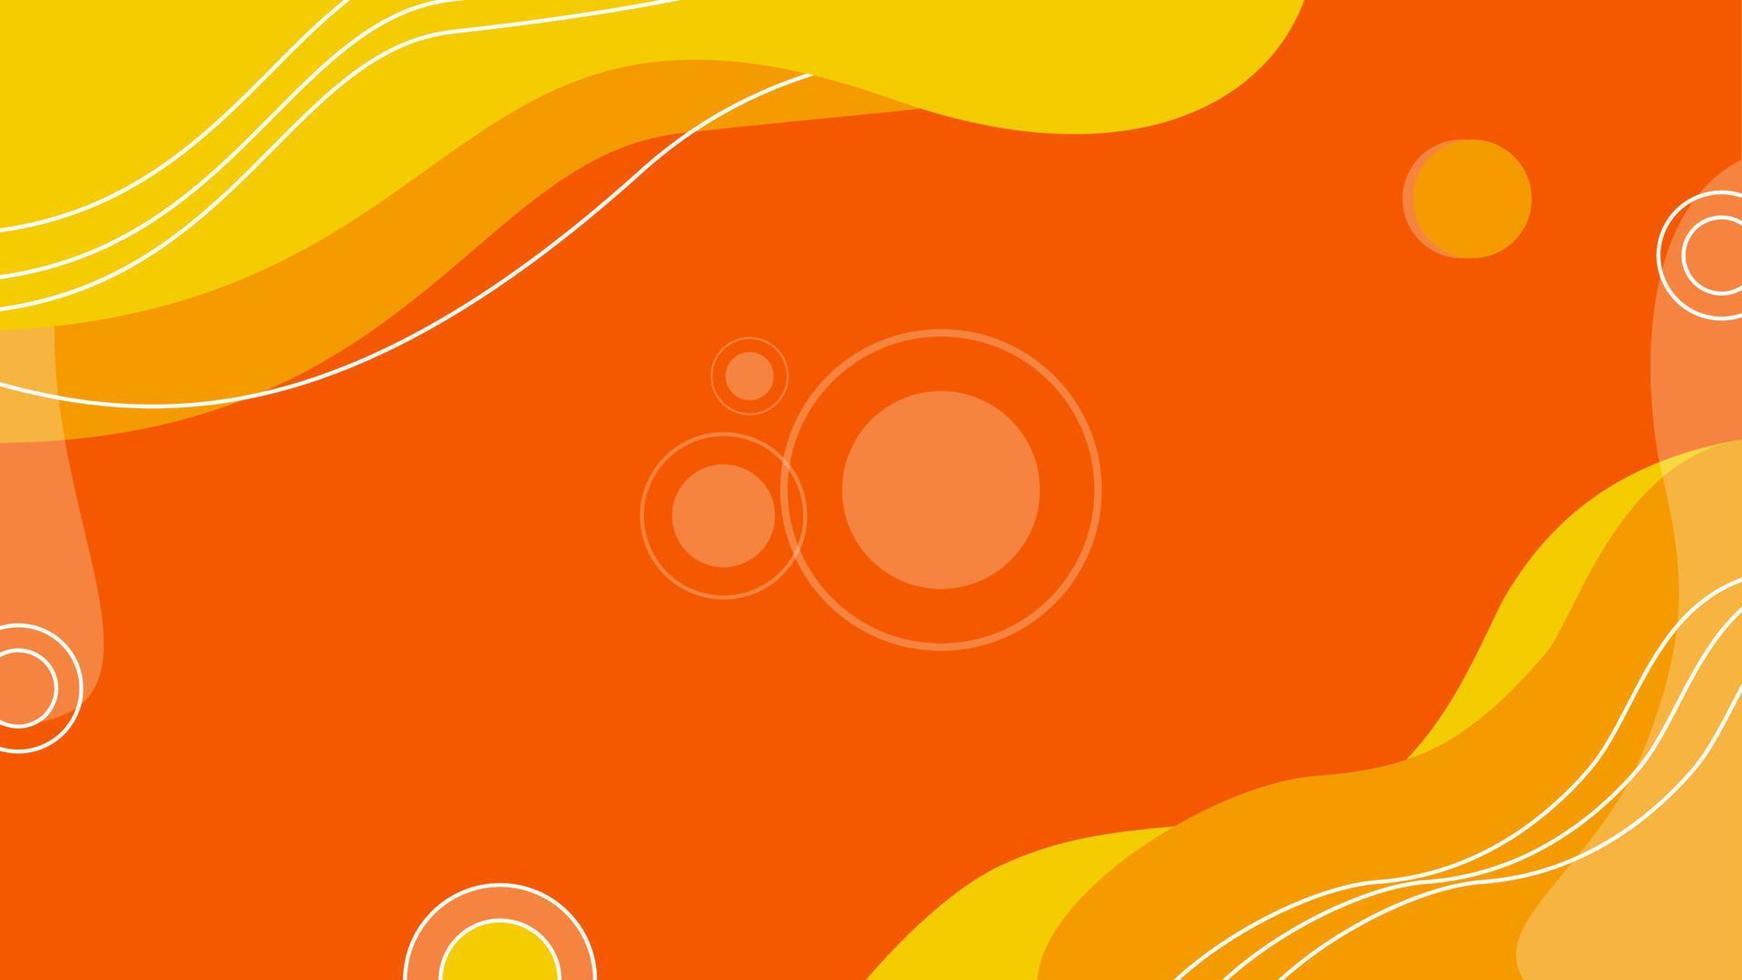 abstracte kleurrijke geometrische achtergrond textuur illustratie met cirkels. cool voor banner, sjabloon voor sociale media, poster en flyer-sjabloon vector